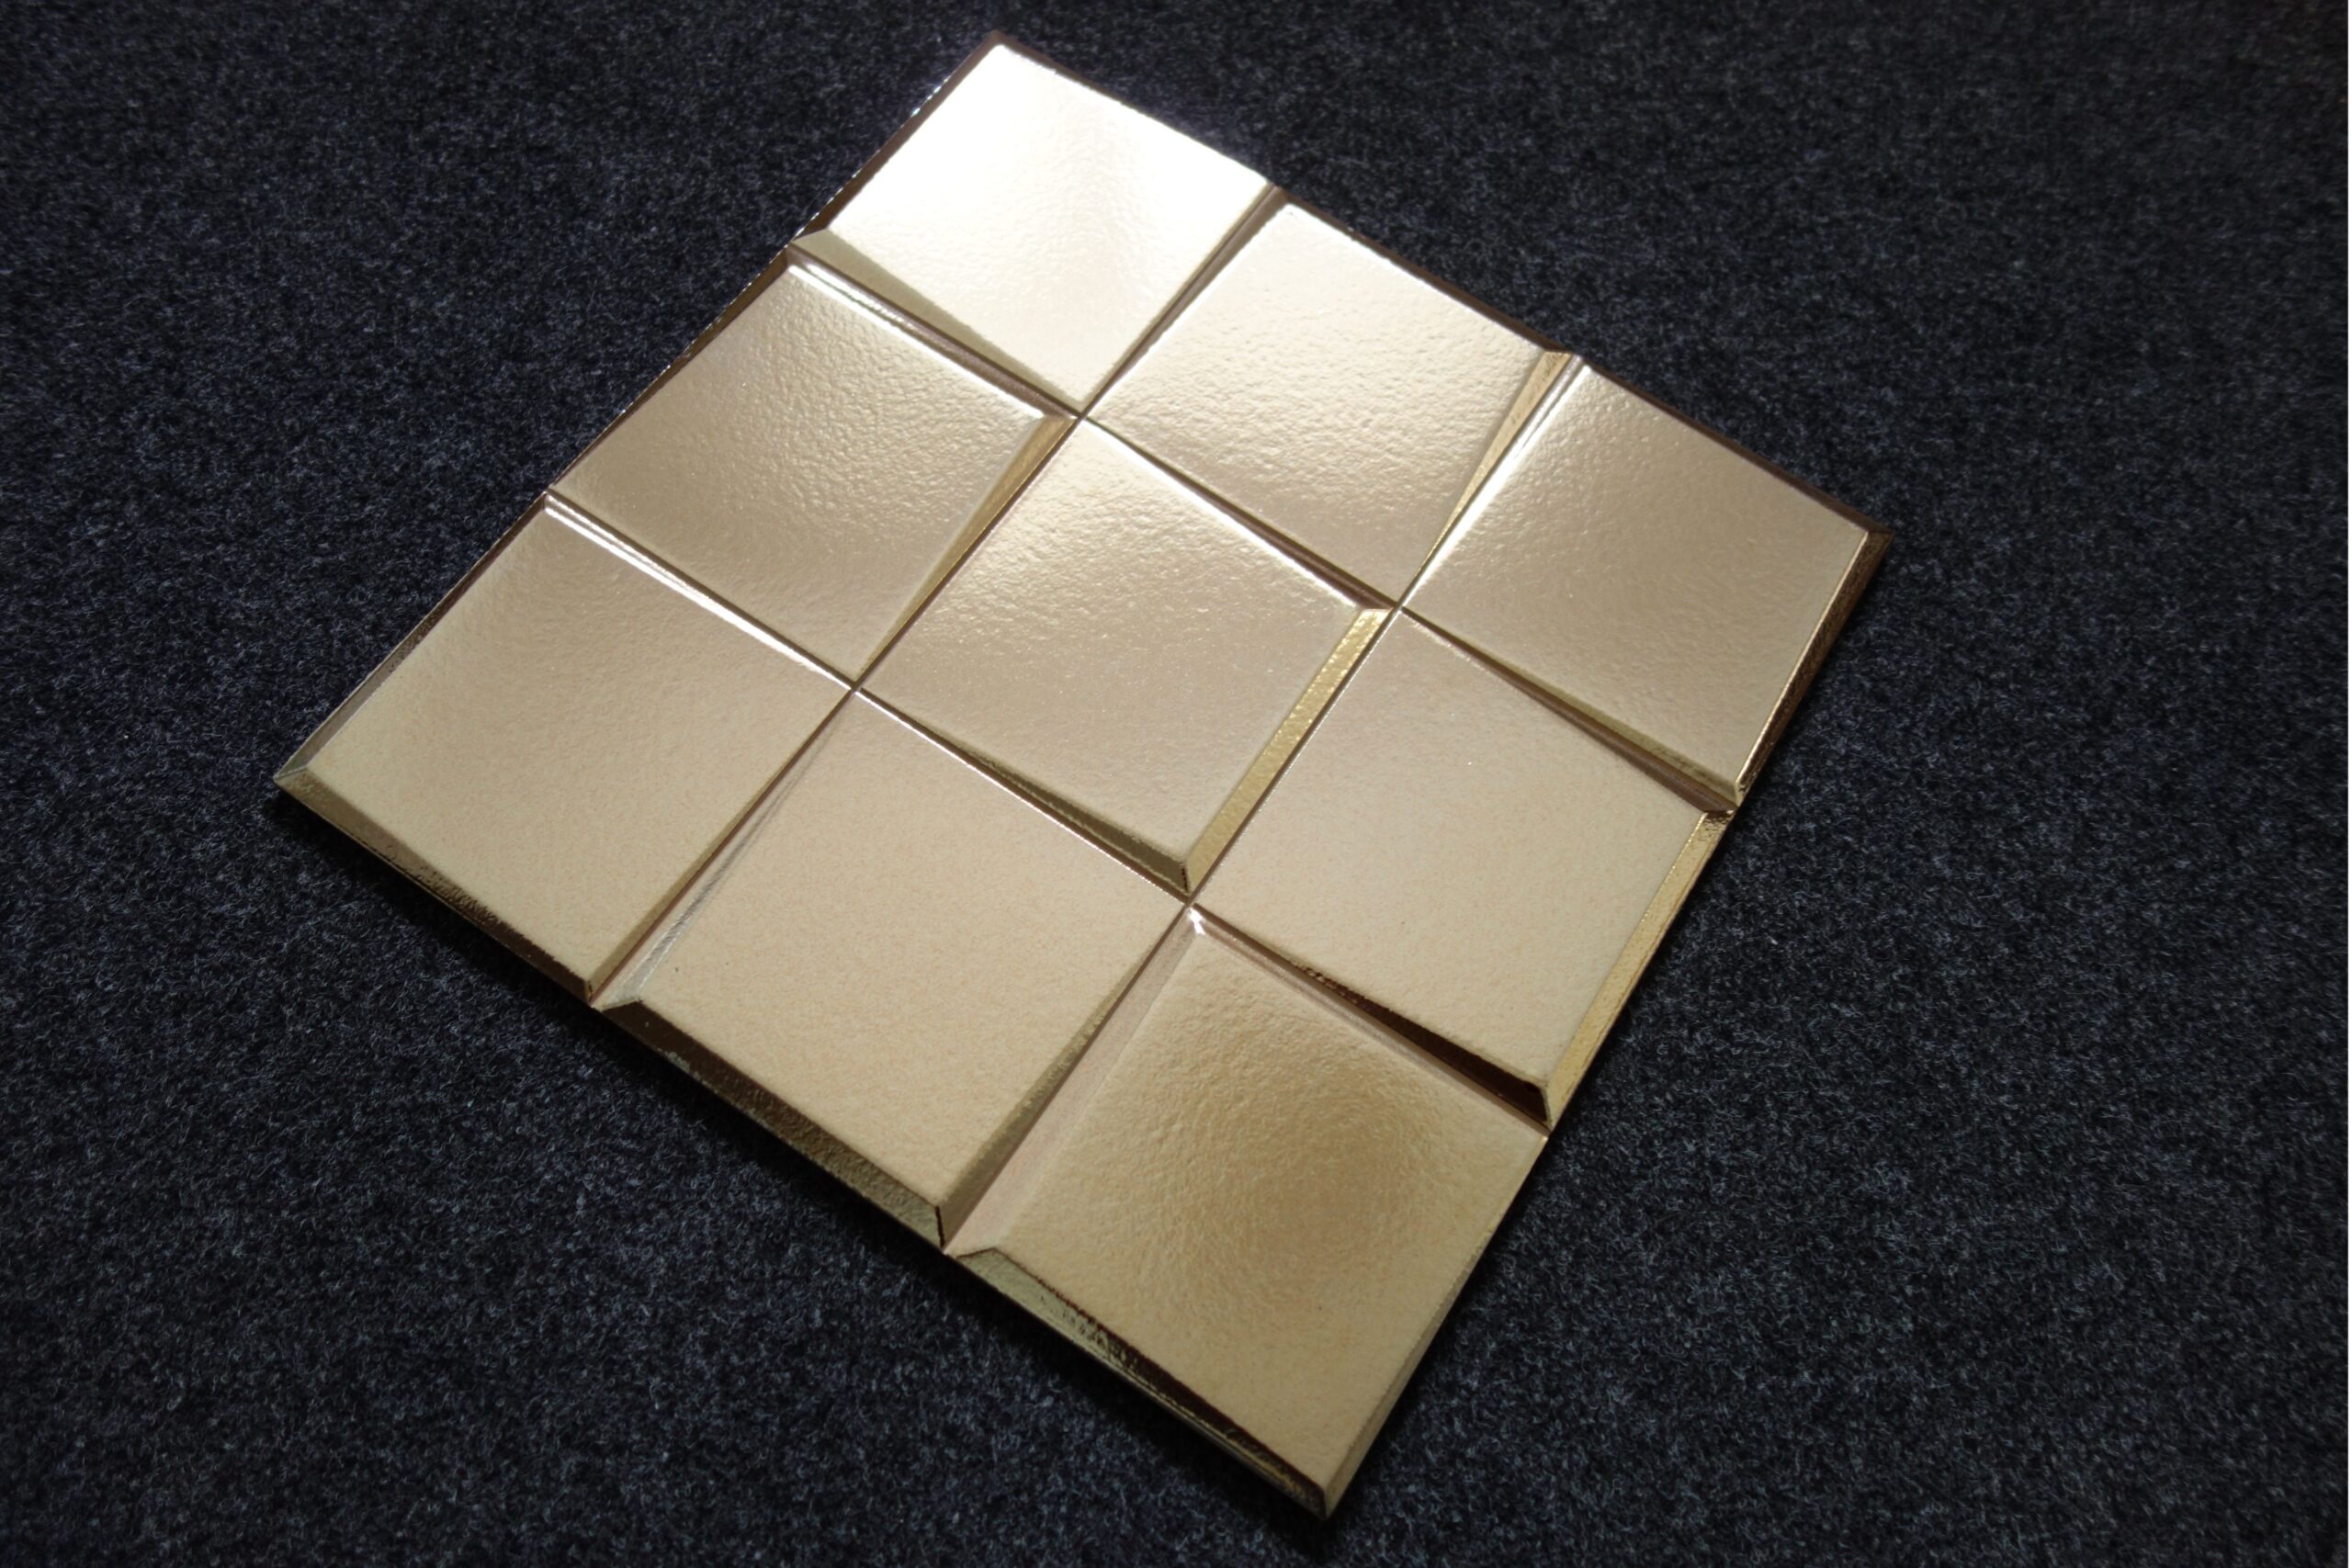 płytki złote 3D PATTERN ORO GOLD 33x33